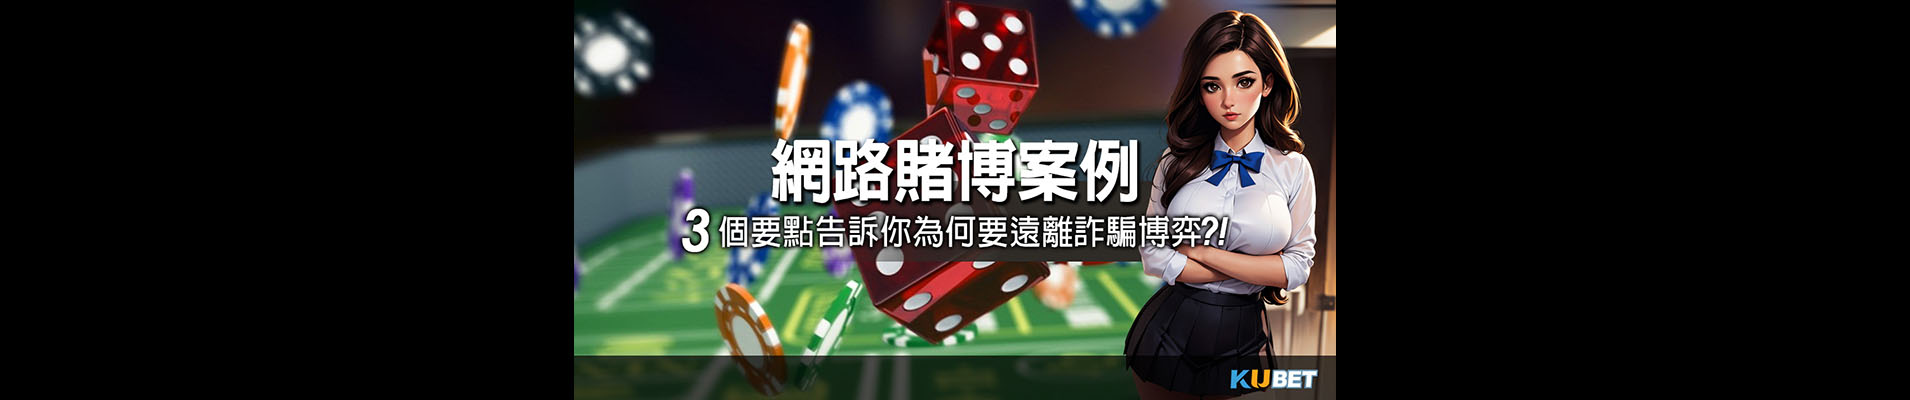 KU娛樂城-線上博弈手機版下載線上現金版最新娛樂城體驗金